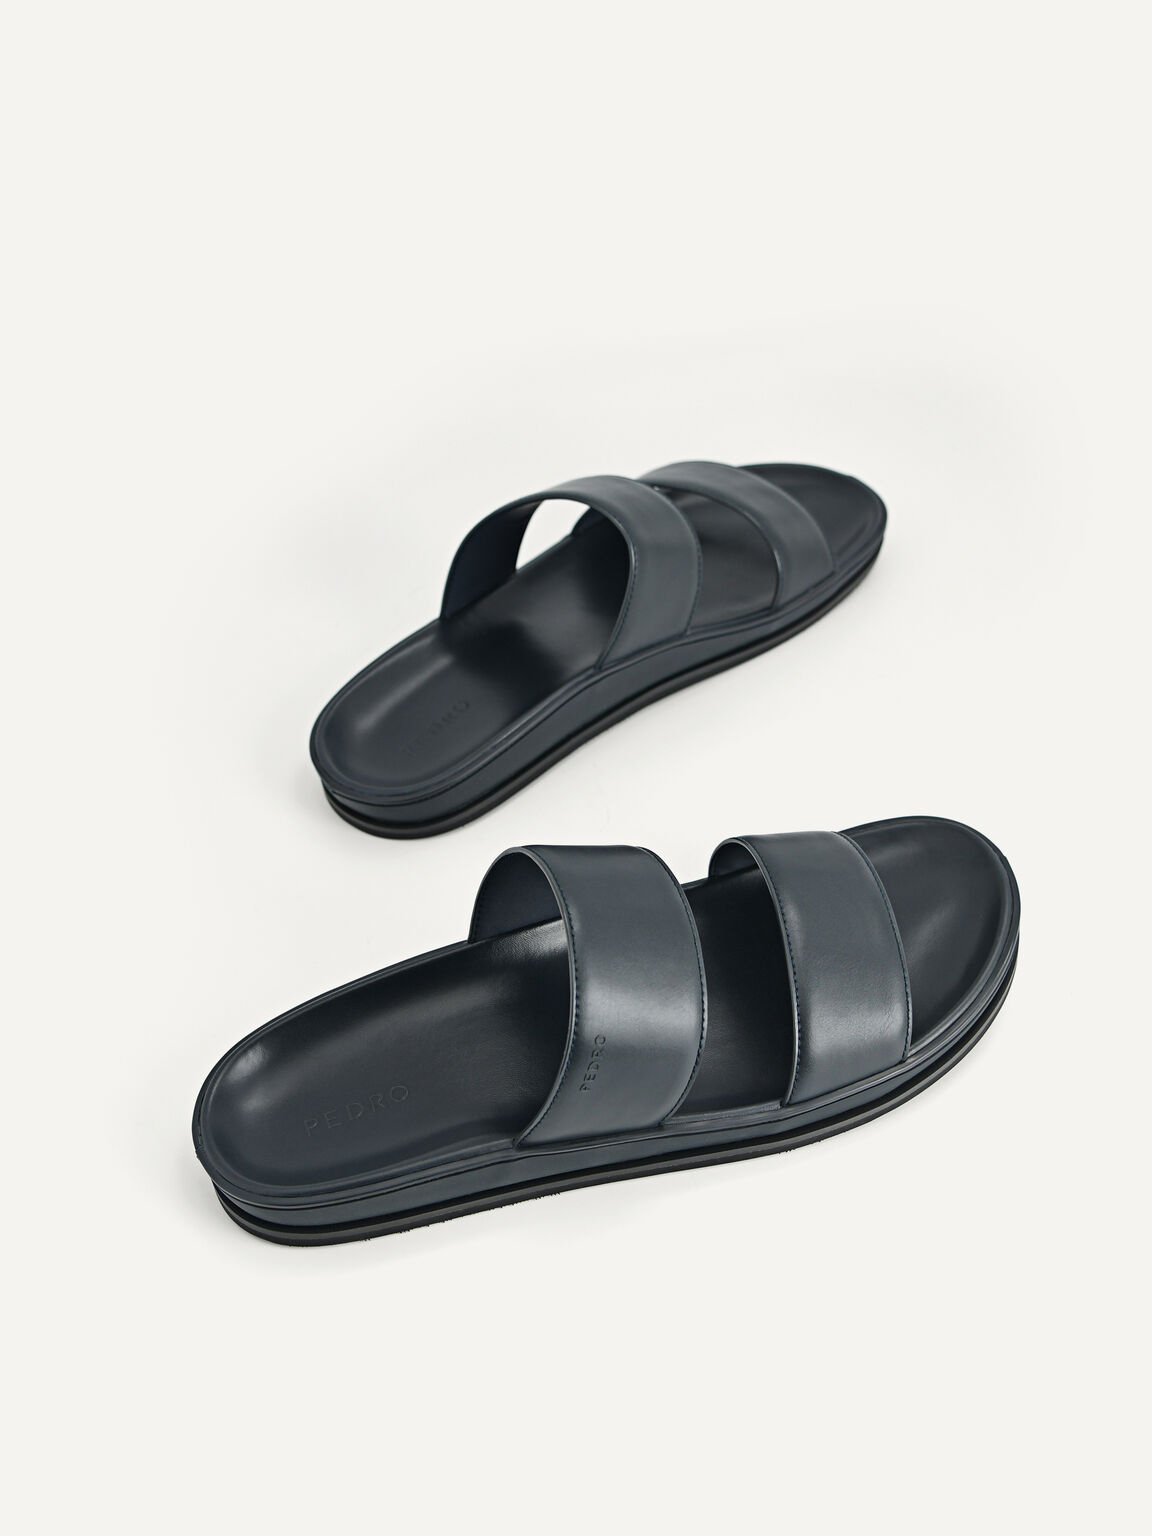 Monochrome Double Strap Sandals, Navy